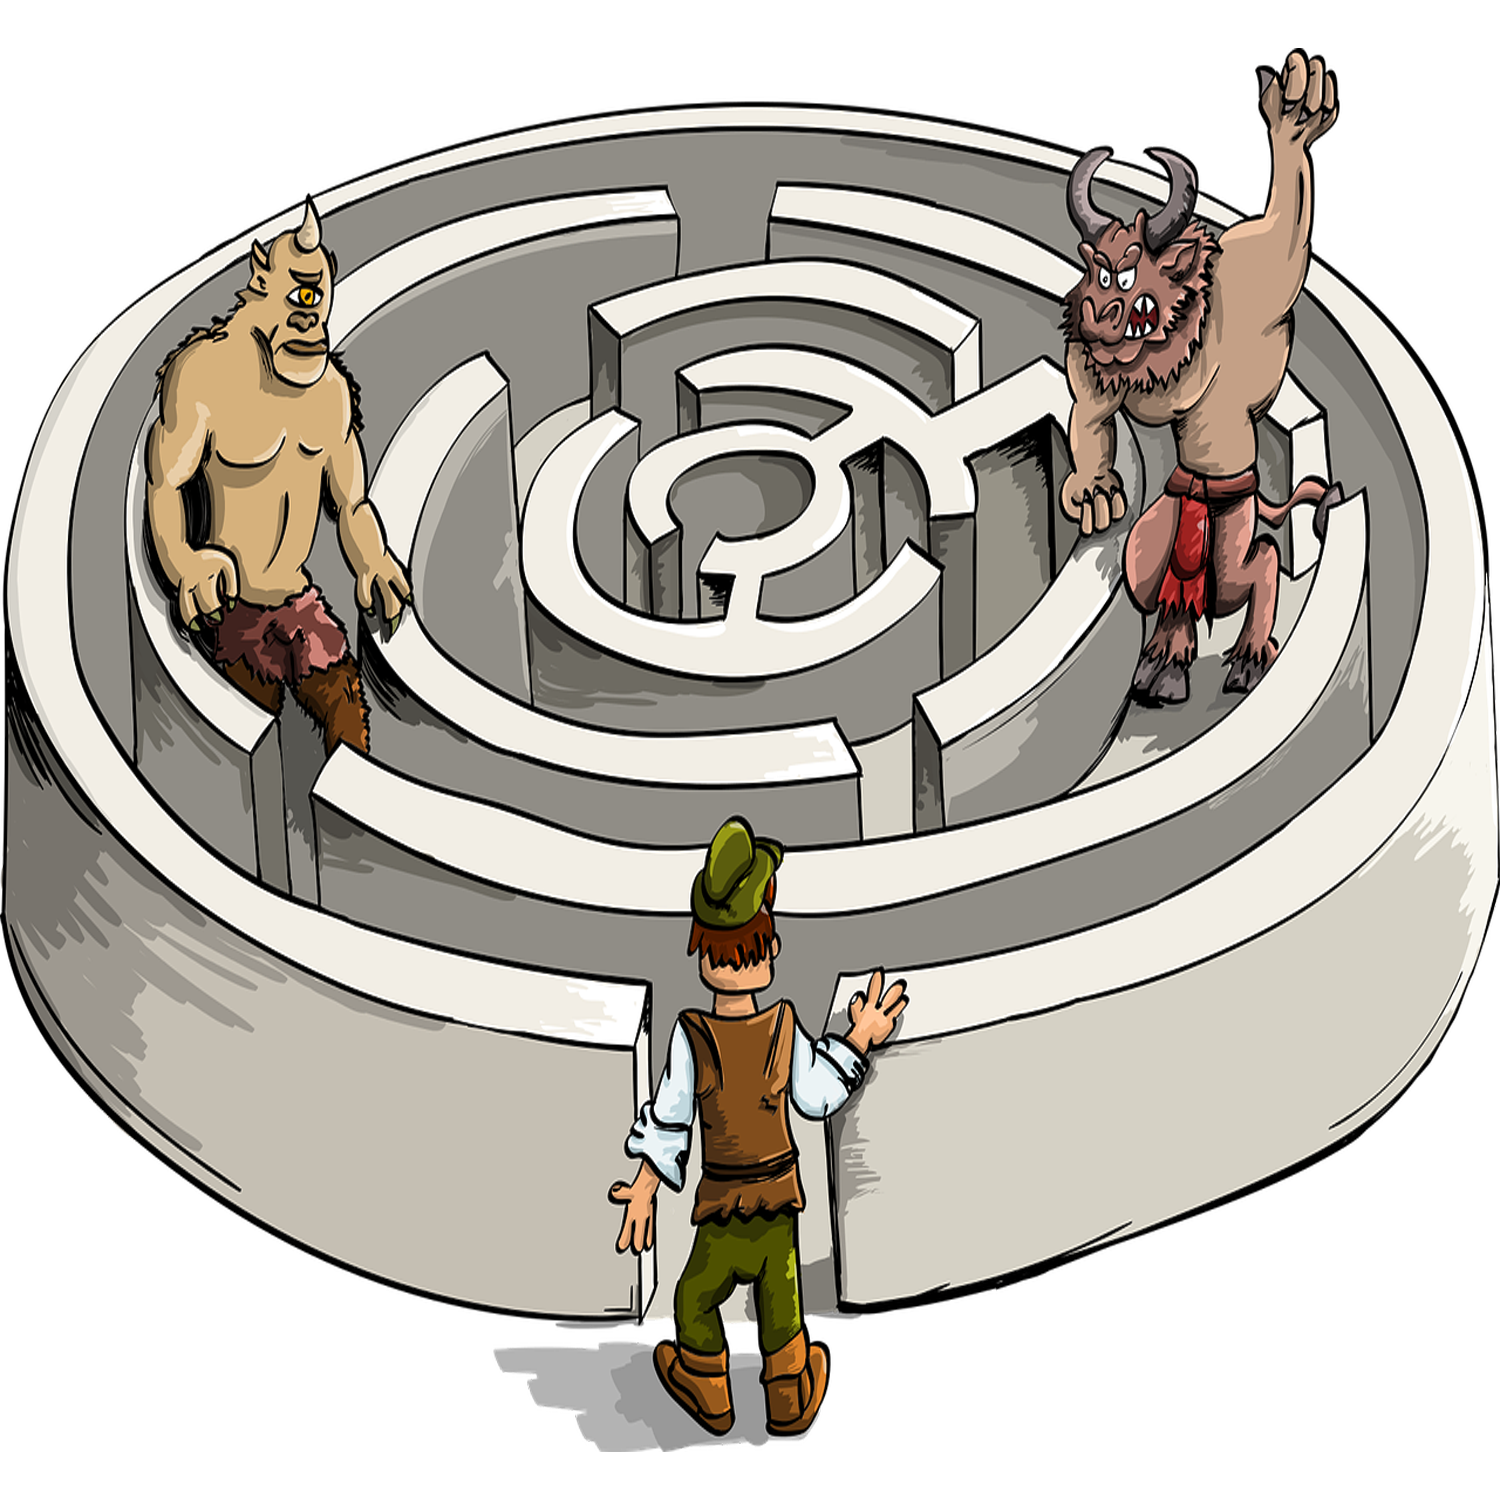 minotaur's labyrinth